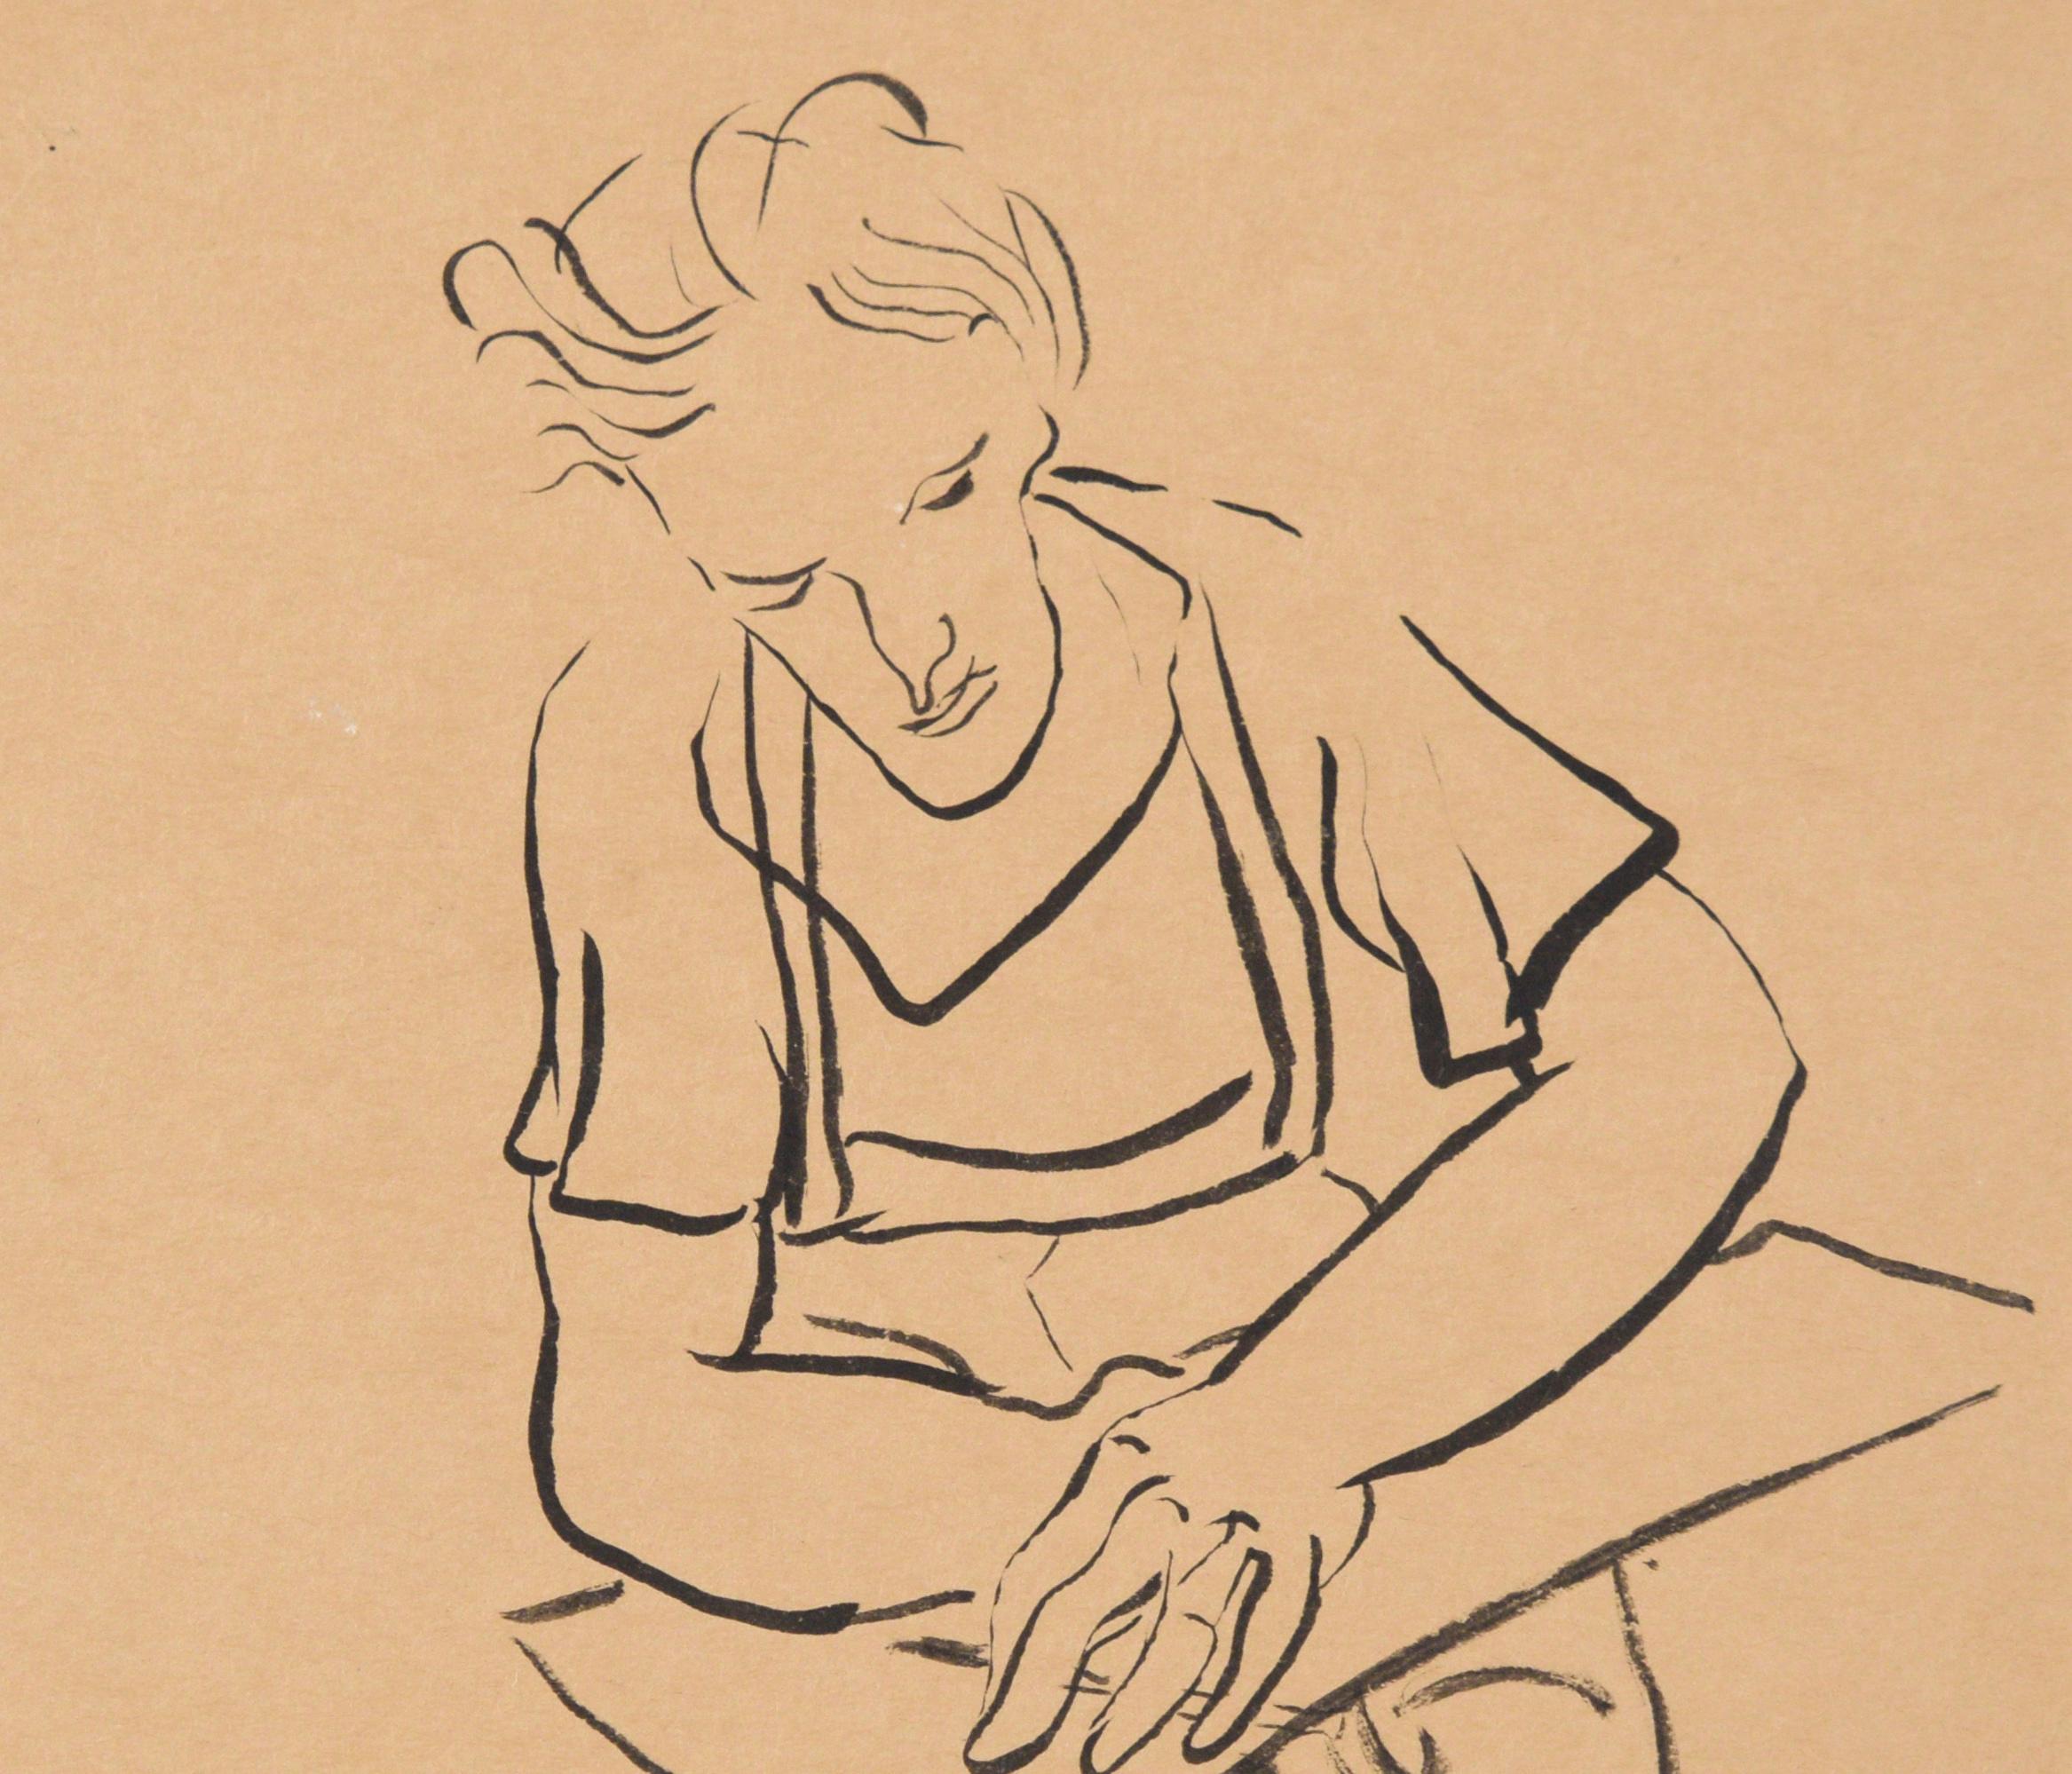 Portrait dessiné d'un homme à un bureau à l'encre de Chine sur papier beige

Dessin figuratif d'un homme à un bureau par Jerry O'Day (américain, 1912). L'homme est assis et s'apprête à prendre un stylo. Ses traits sont quelque peu exagérés, avec un